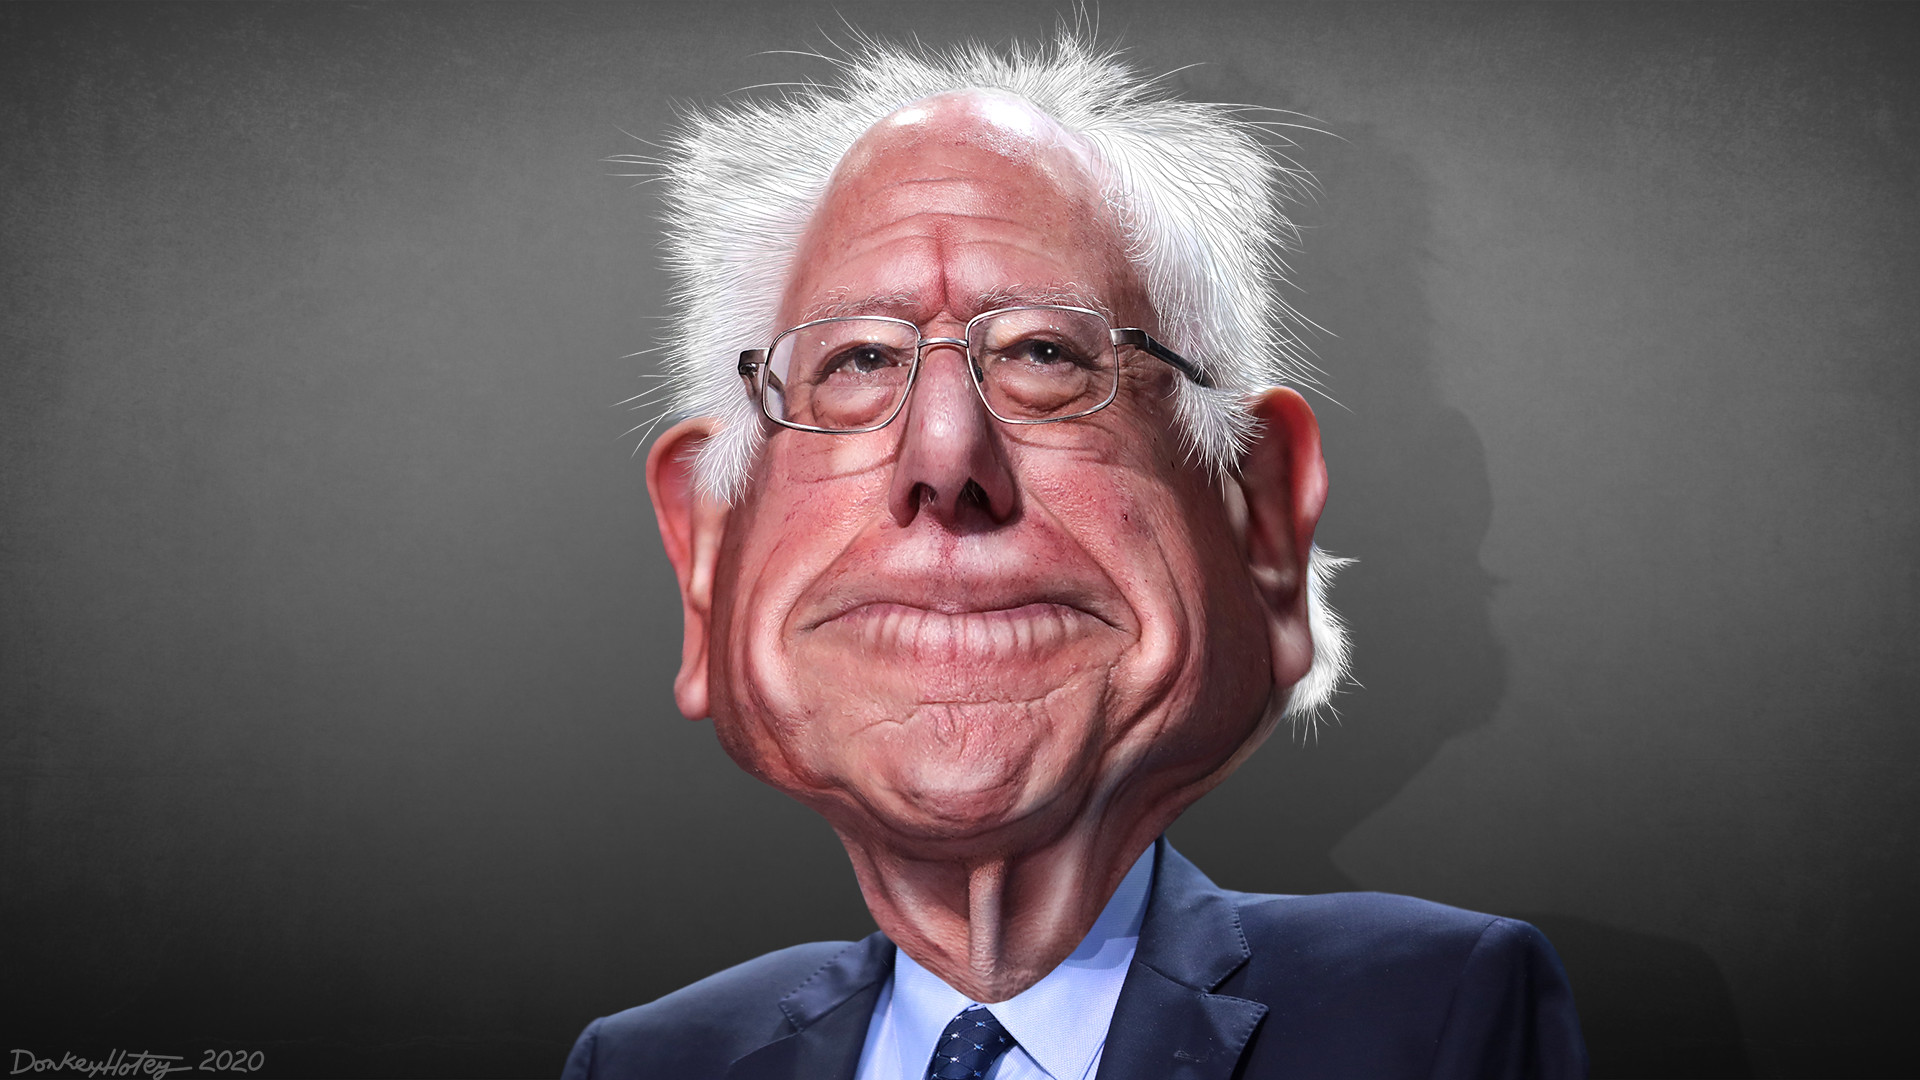 Bernie Sanders busca la nominación del Partido Demócrata para la elección presidencial 2020. El senador del estado de Vermont buscó sin éxito la nominación como candidato presidencial en 2016. Ilustración: DonkeyHotey